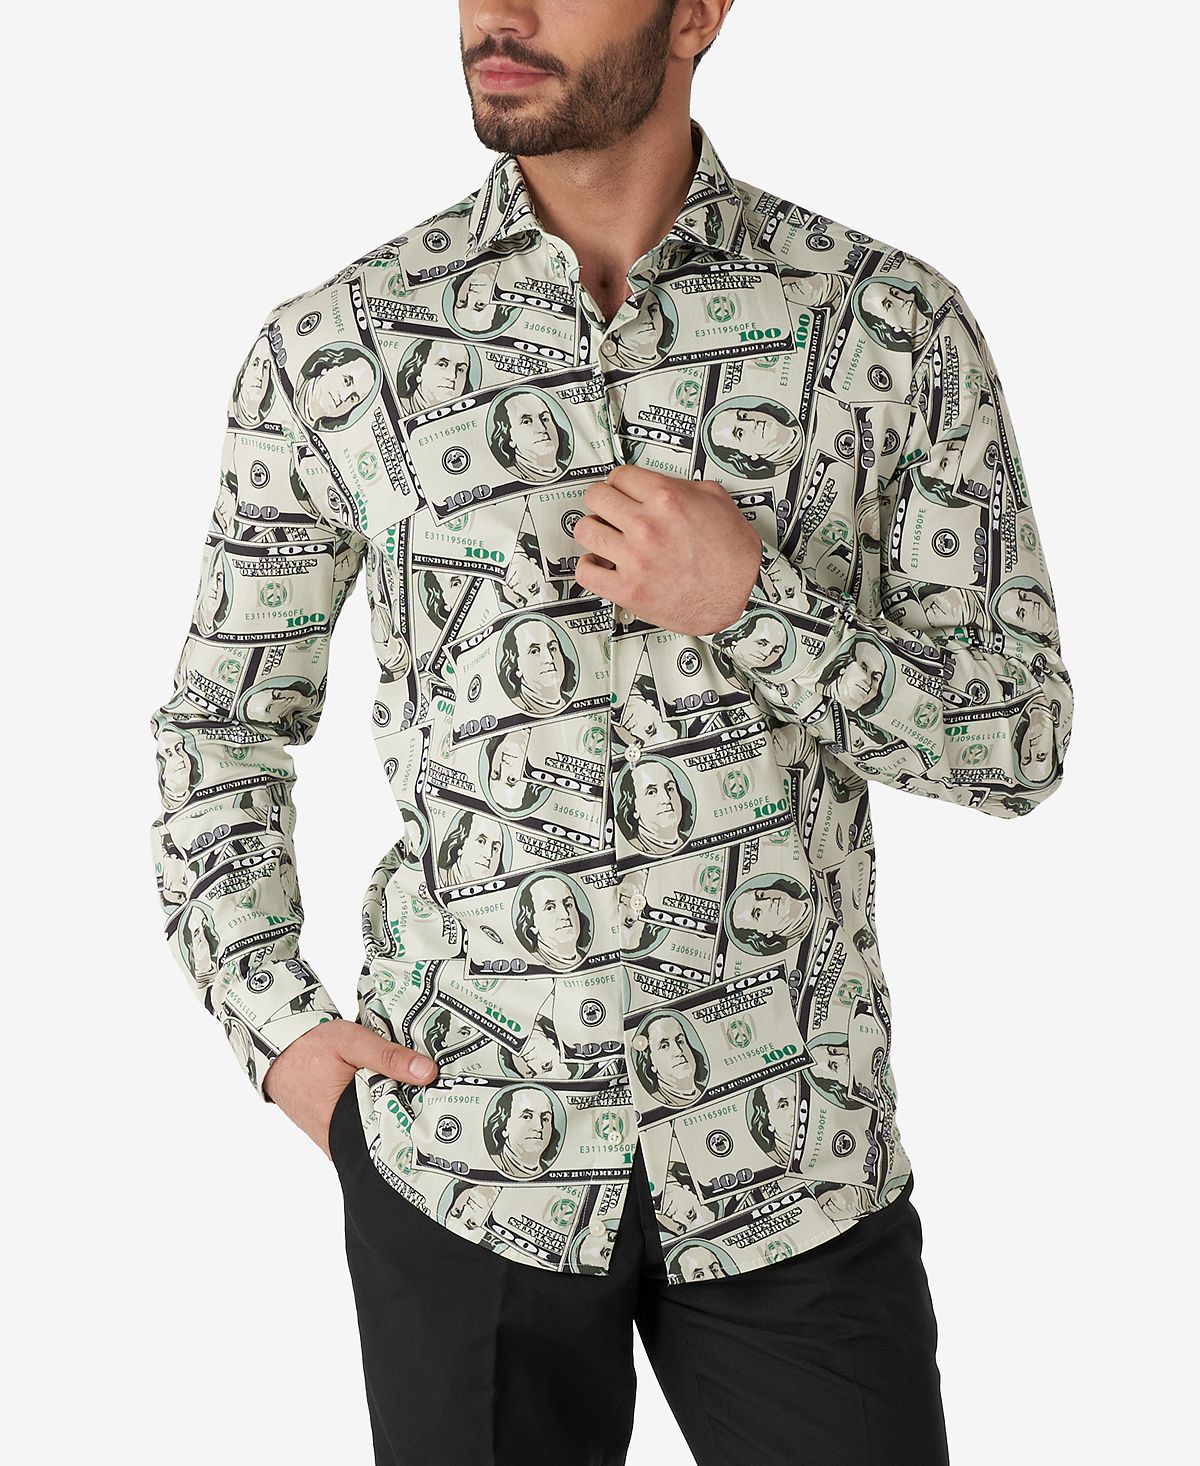 Мужская классическая рубашка приталенного кроя Cashanova с принтом денег OppoSuits